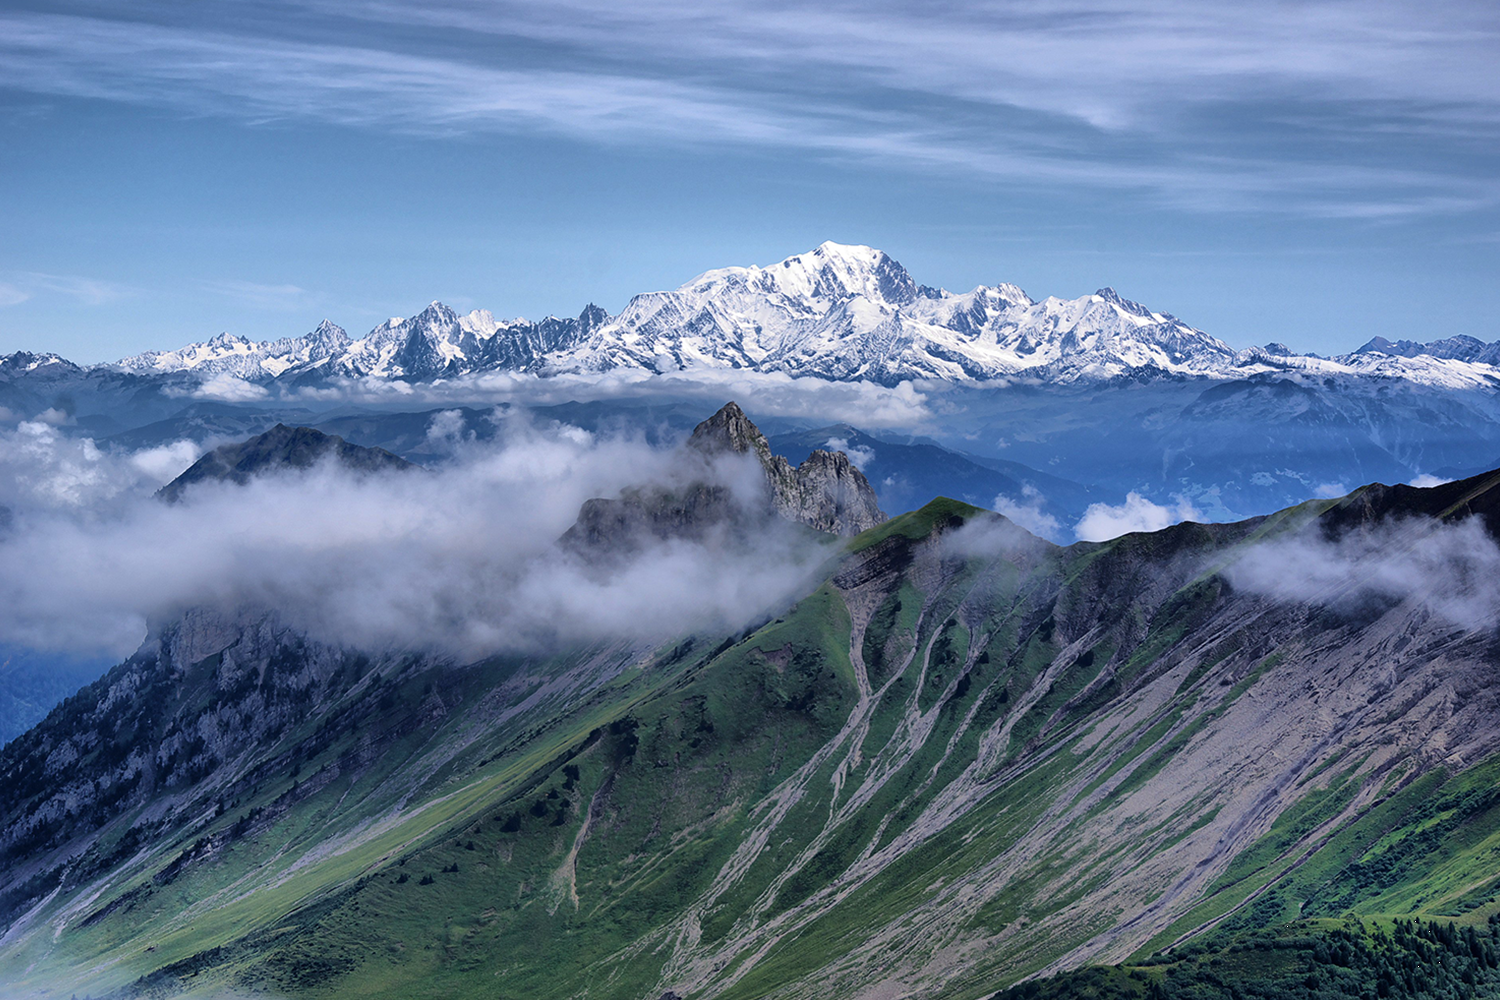 Высочайшие горные массивы. Гора Монблан во Франции. Франция Альпы Монблан. Горный массив Монблан. Самая высокая гора в Европе Монблан.